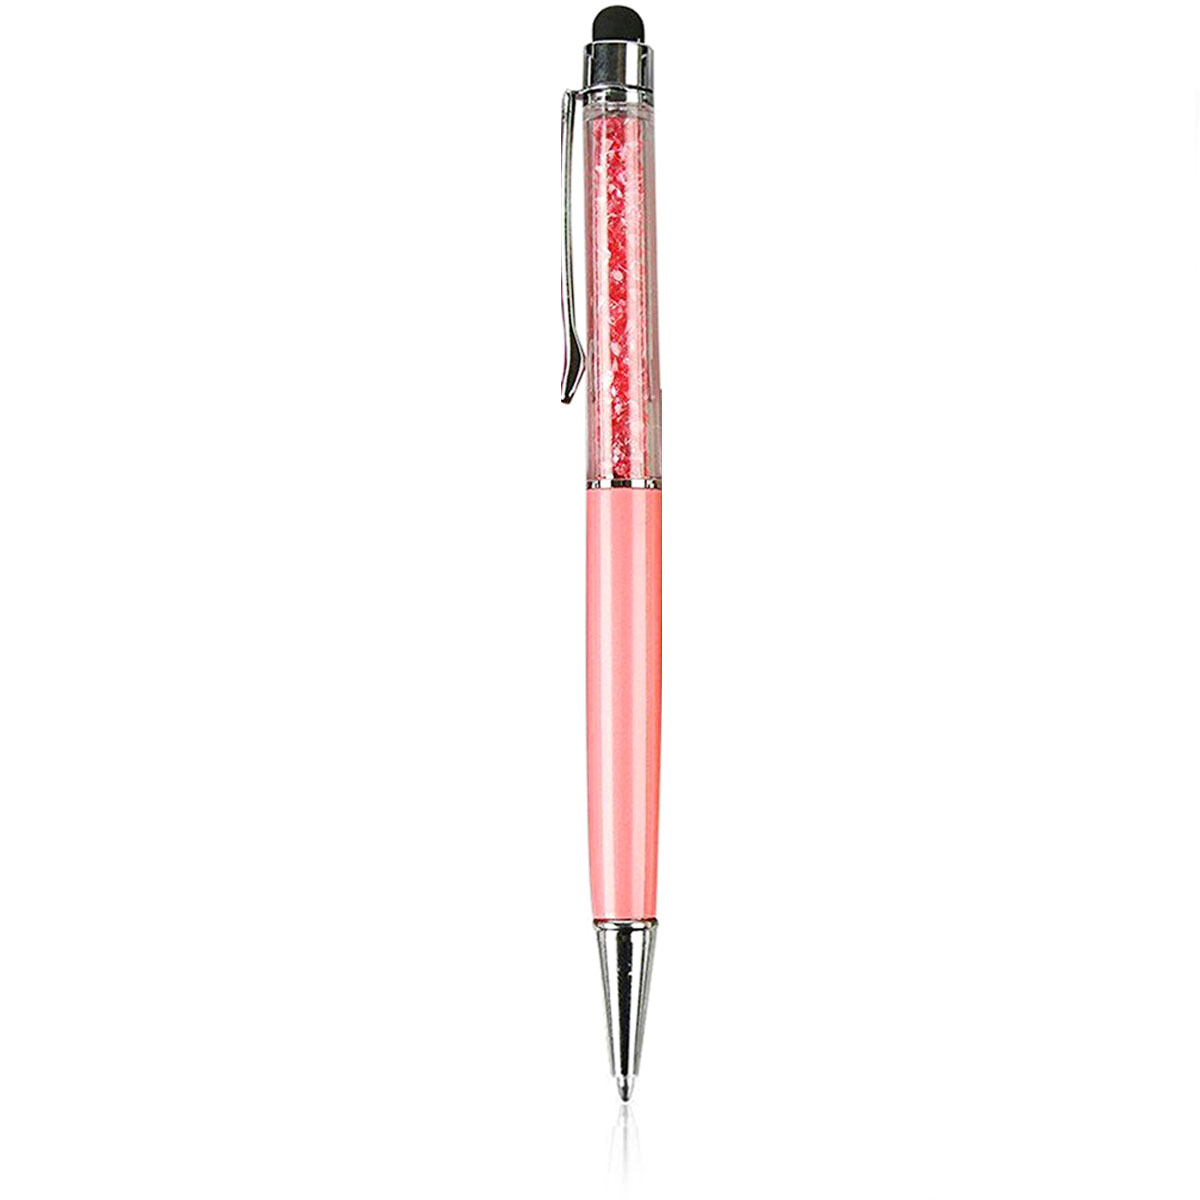 Ручка стилус для телефонов и планшетов, со стразами, цвет персиковый